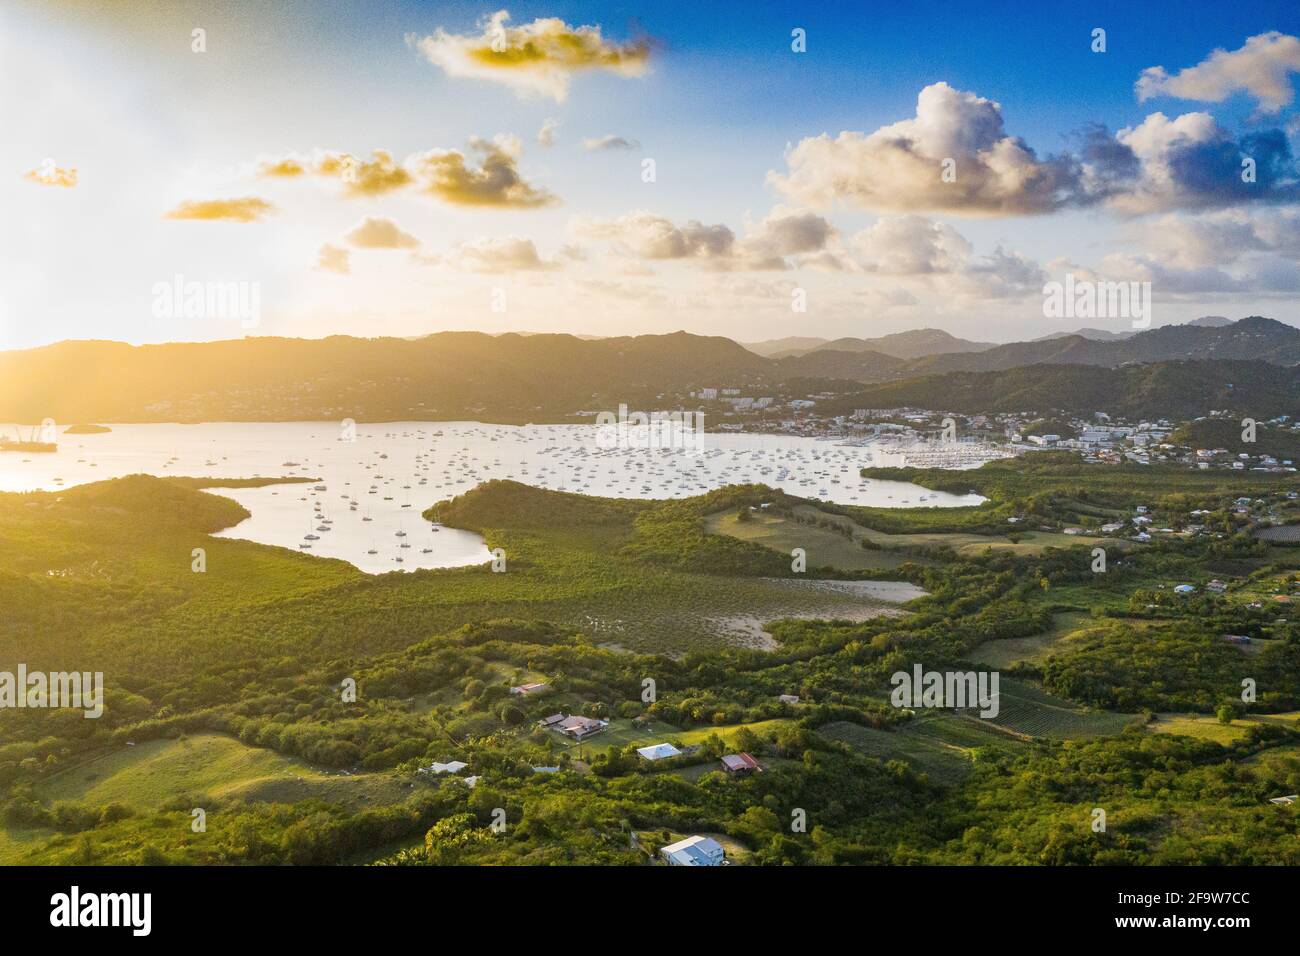 La bahía de Marin es una de las más hermosas Bahías de Martinica Foto de stock